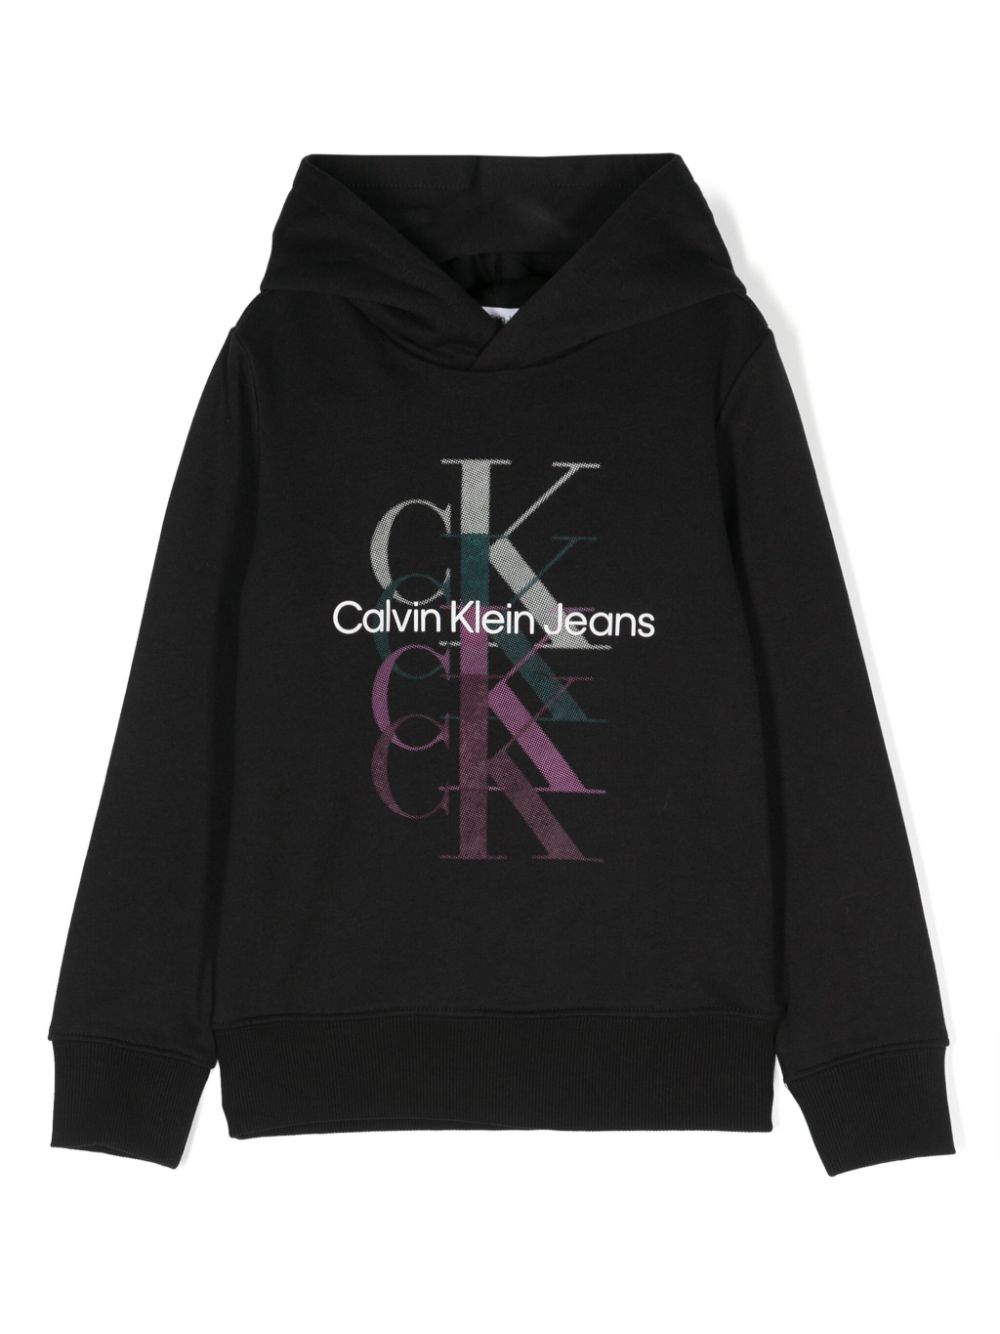 Calvin Klein Kids' Girls Black Cotton Monogram Hoodie